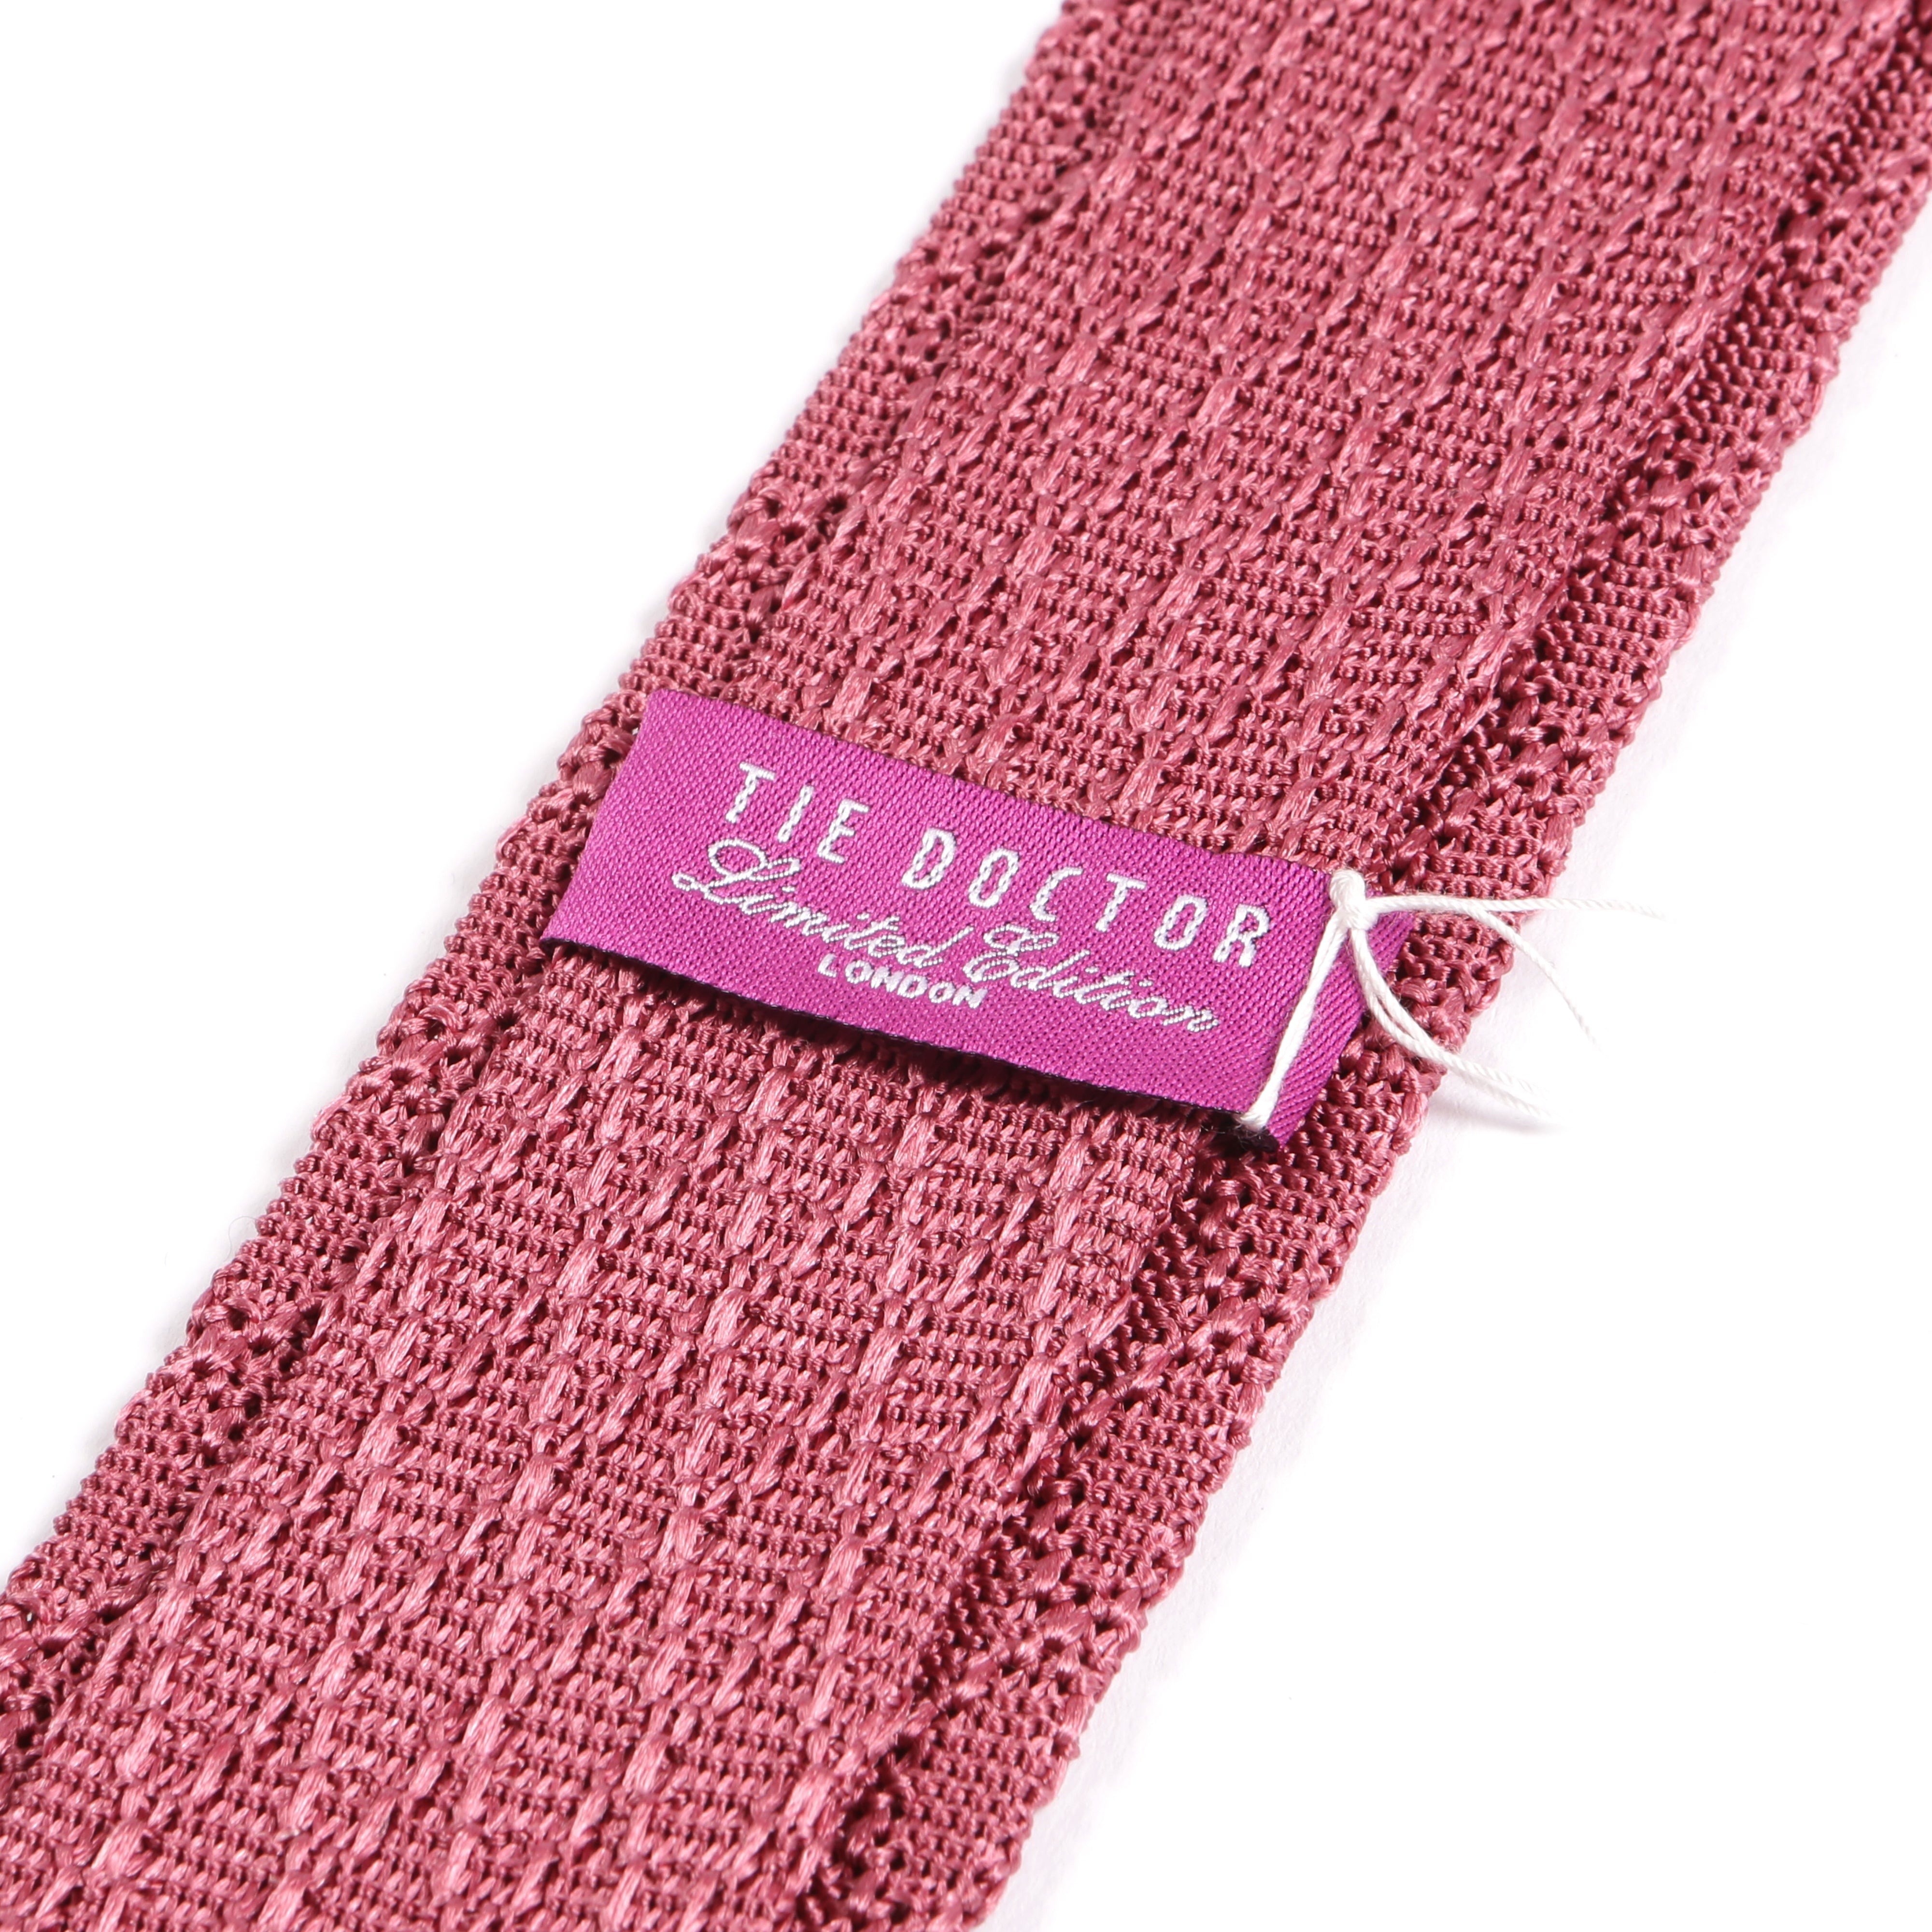 Dark Pink Iza Silk Knitted Tie 6cm